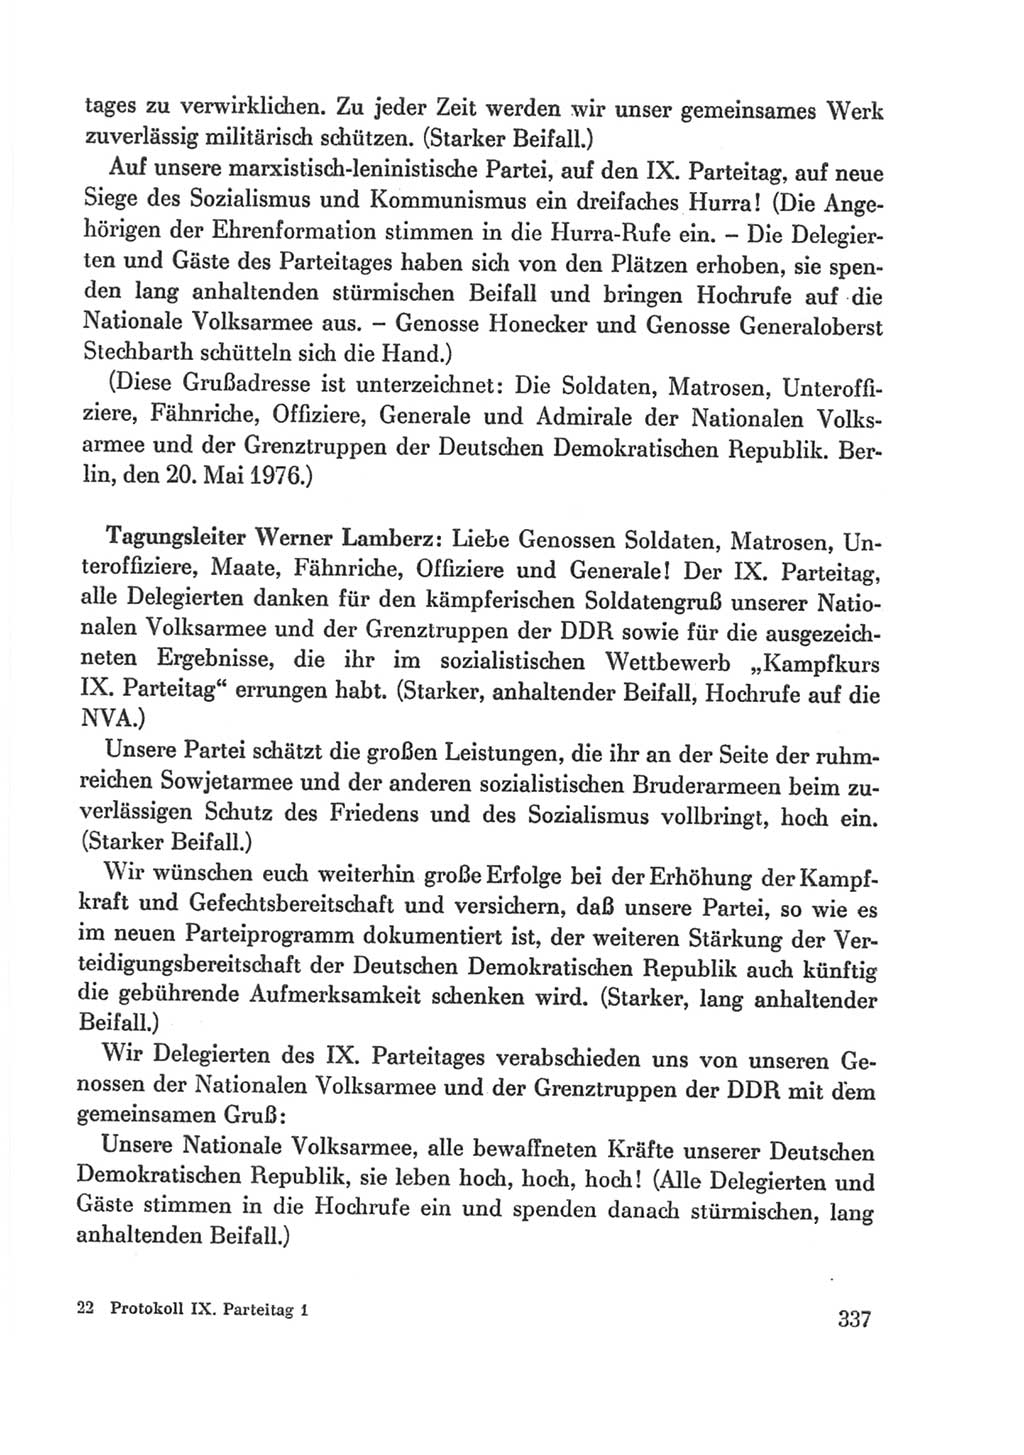 Protokoll der Verhandlungen des Ⅸ. Parteitages der Sozialistischen Einheitspartei Deutschlands (SED) [Deutsche Demokratische Republik (DDR)] 1976, Band 1, Seite 337 (Prot. Verh. Ⅸ. PT SED DDR 1976, Bd. 1, S. 337)